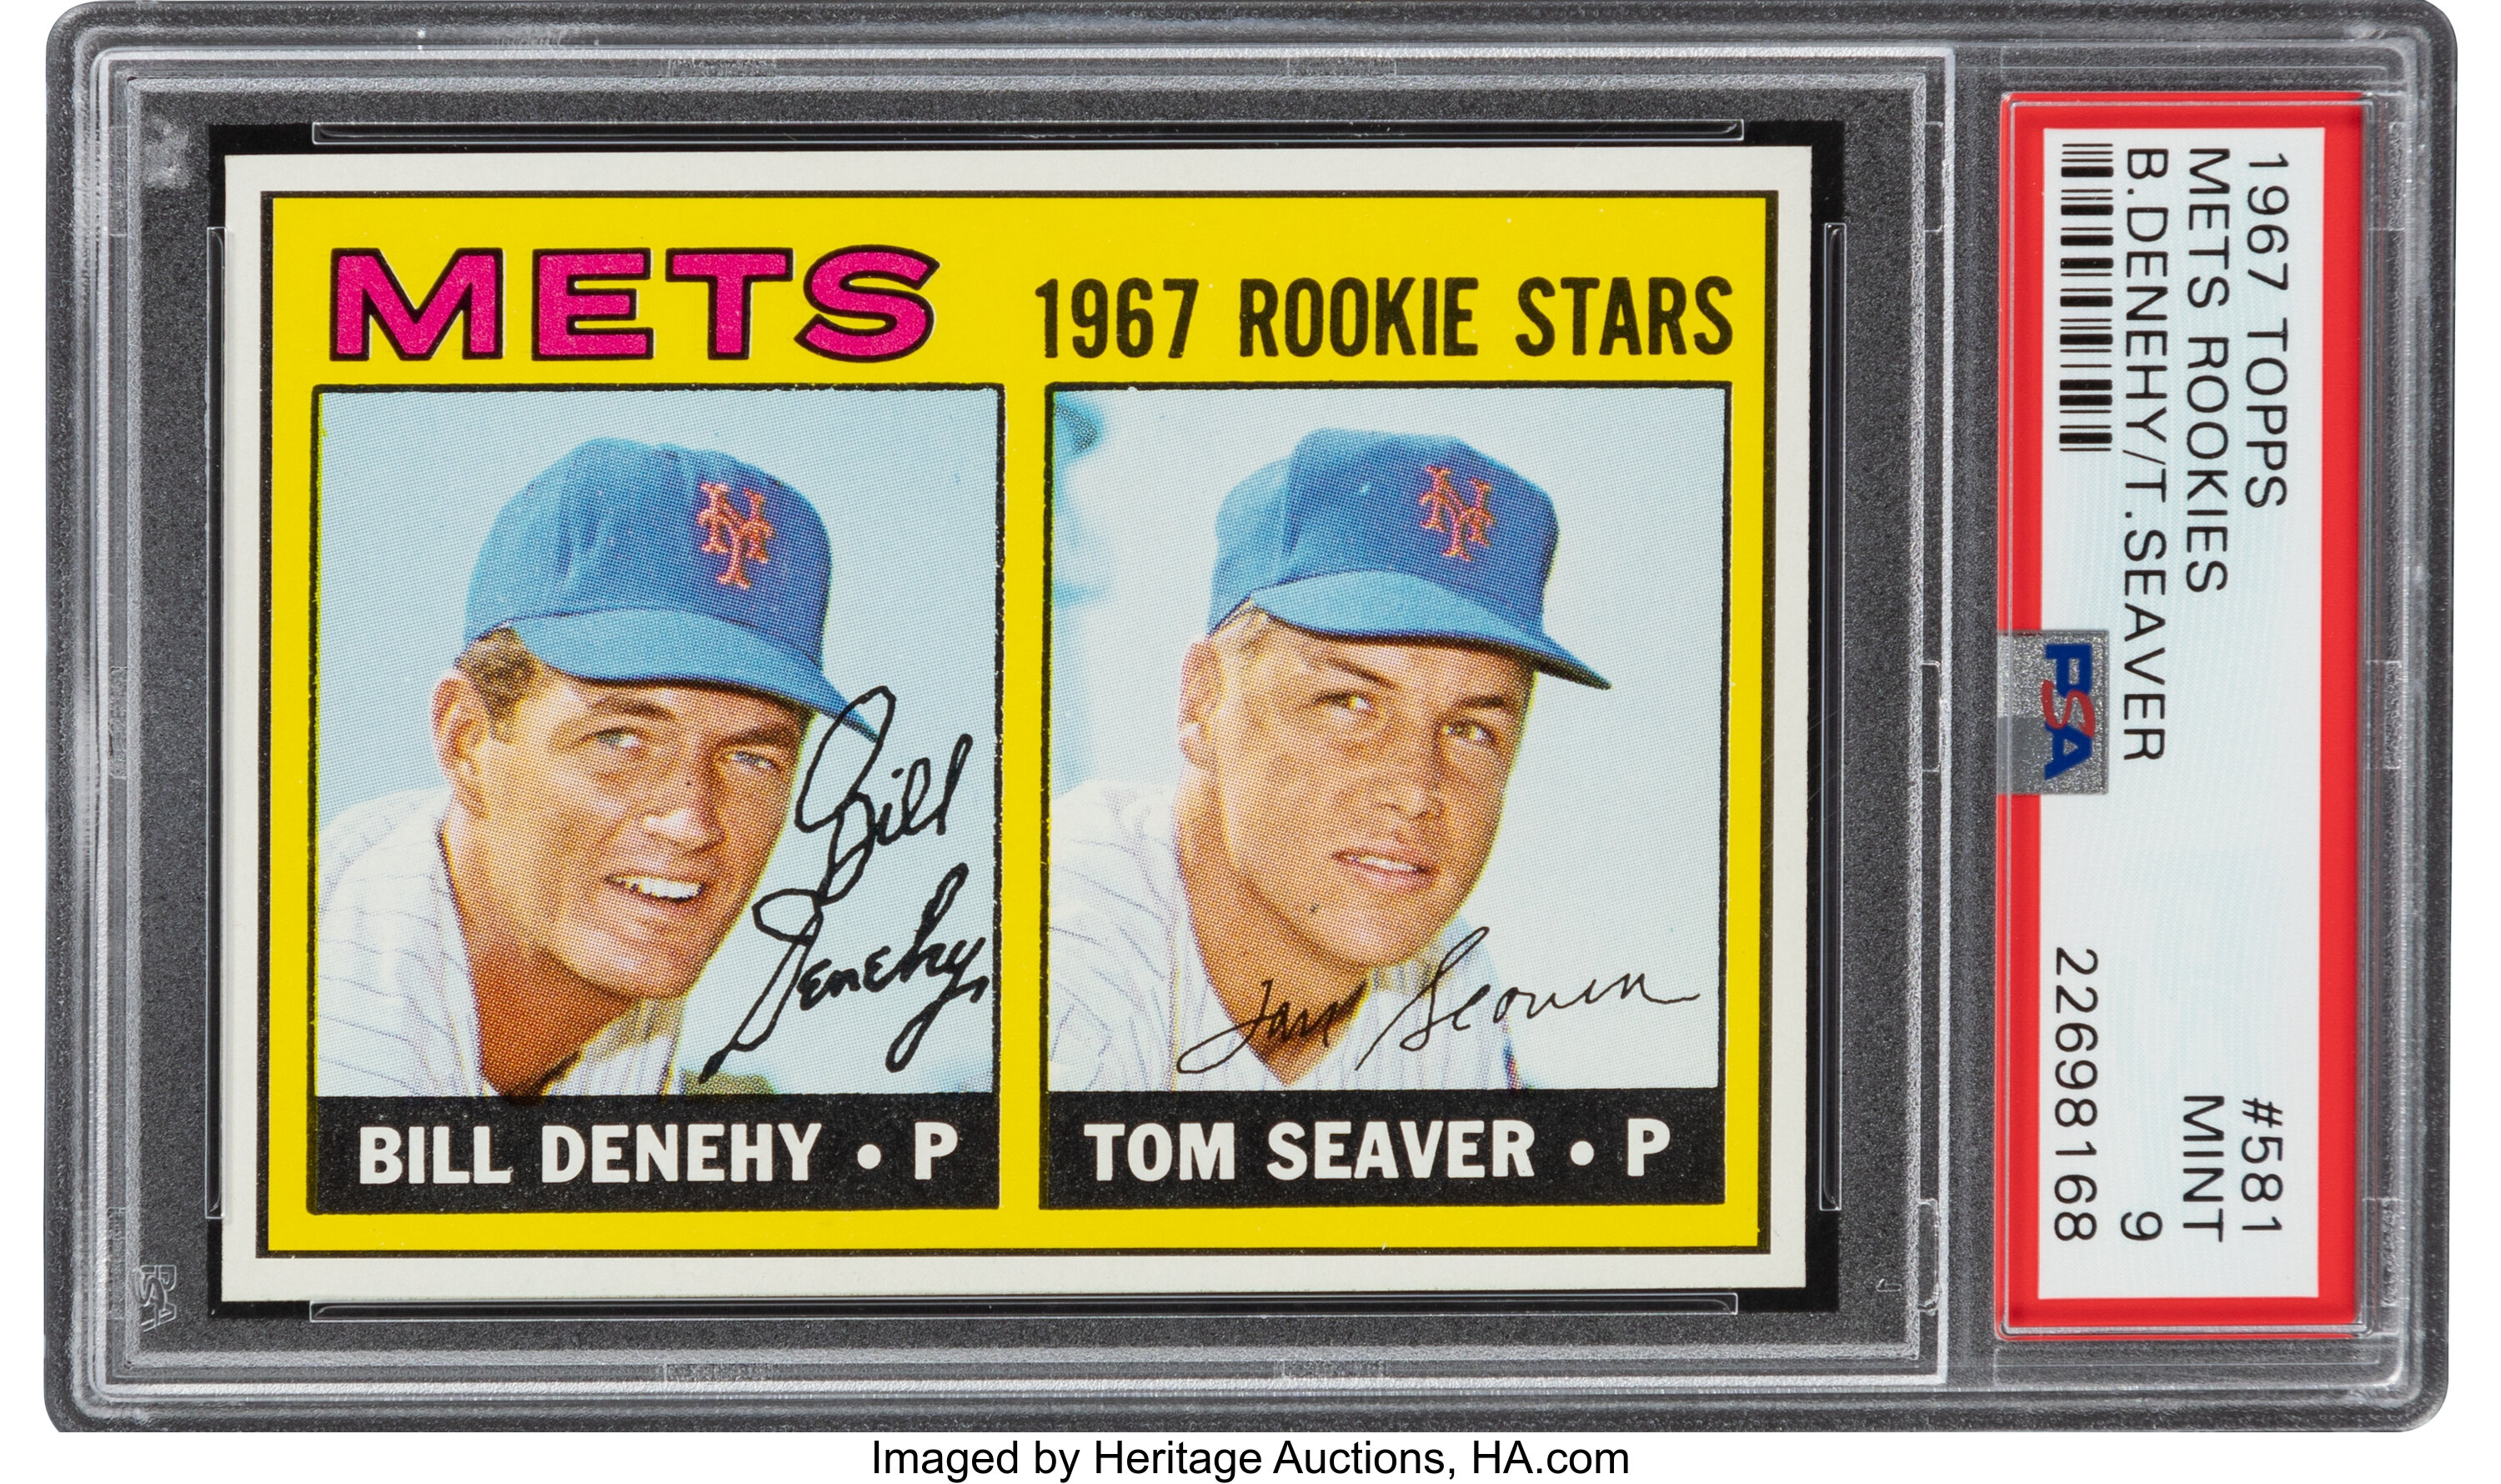 tom seaver baseball card value